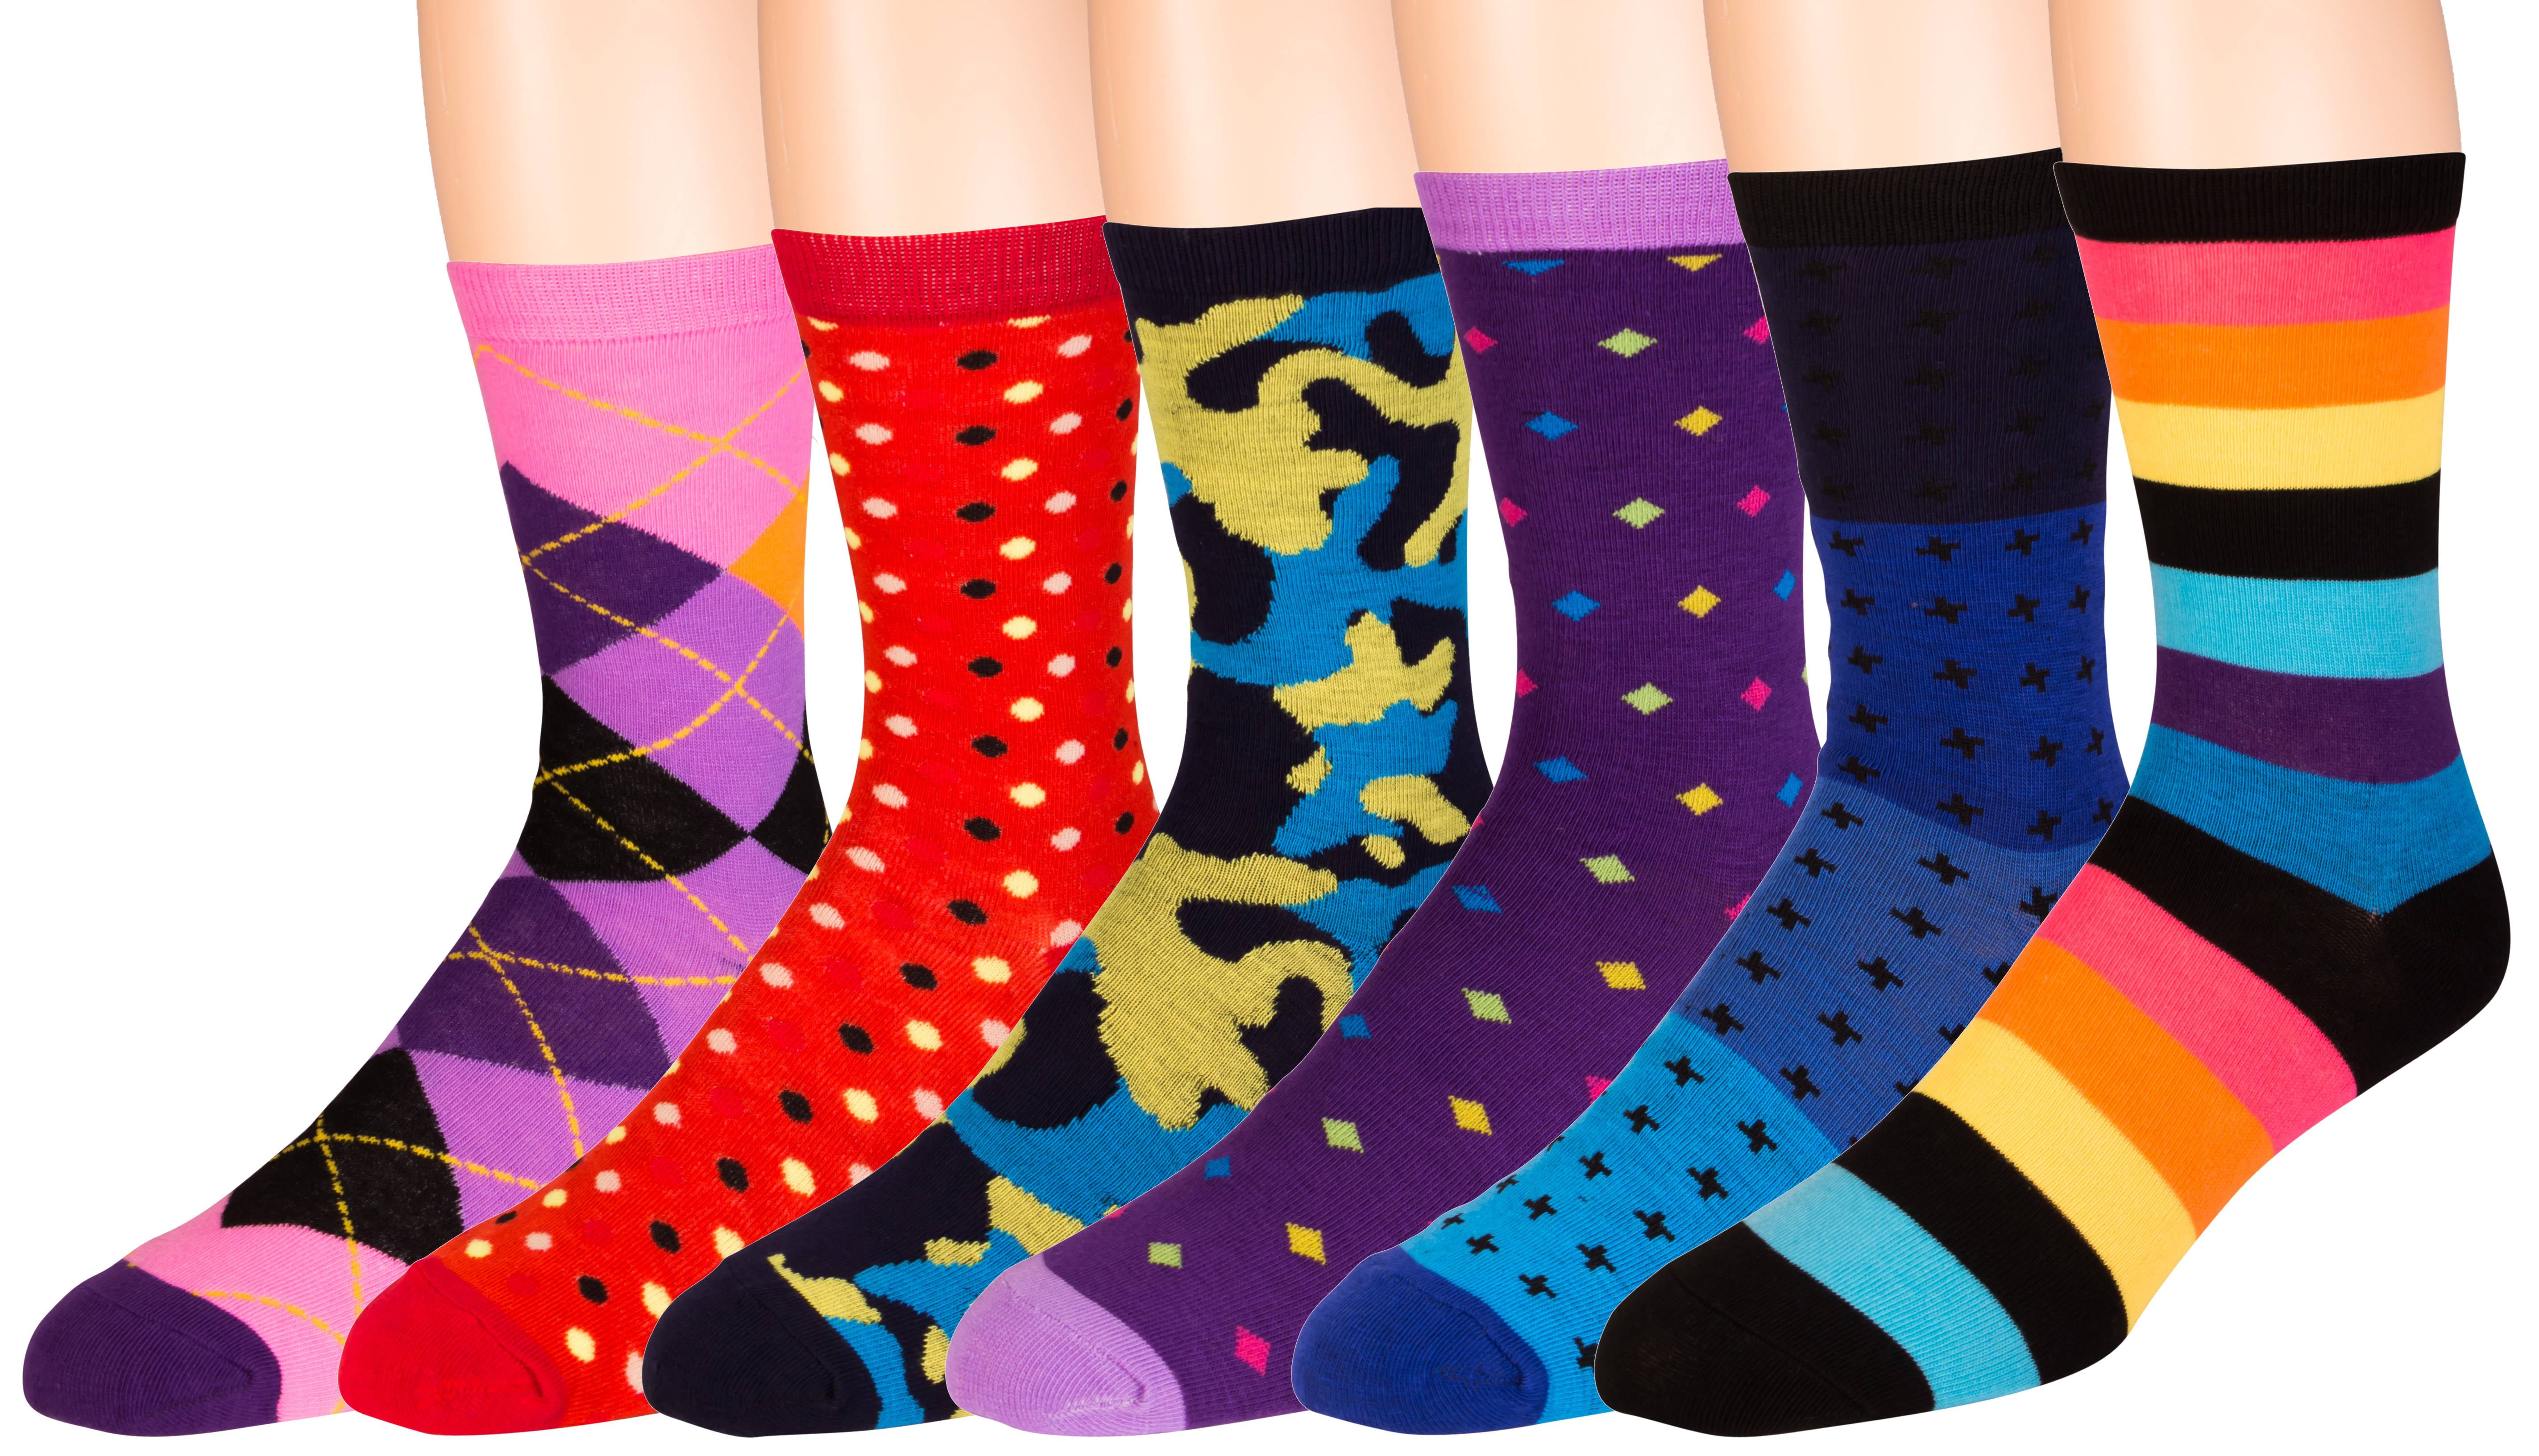 Zeke Men's Pattern Dress Funky Fun Colorful Socks 6 Assorted Patterns ...